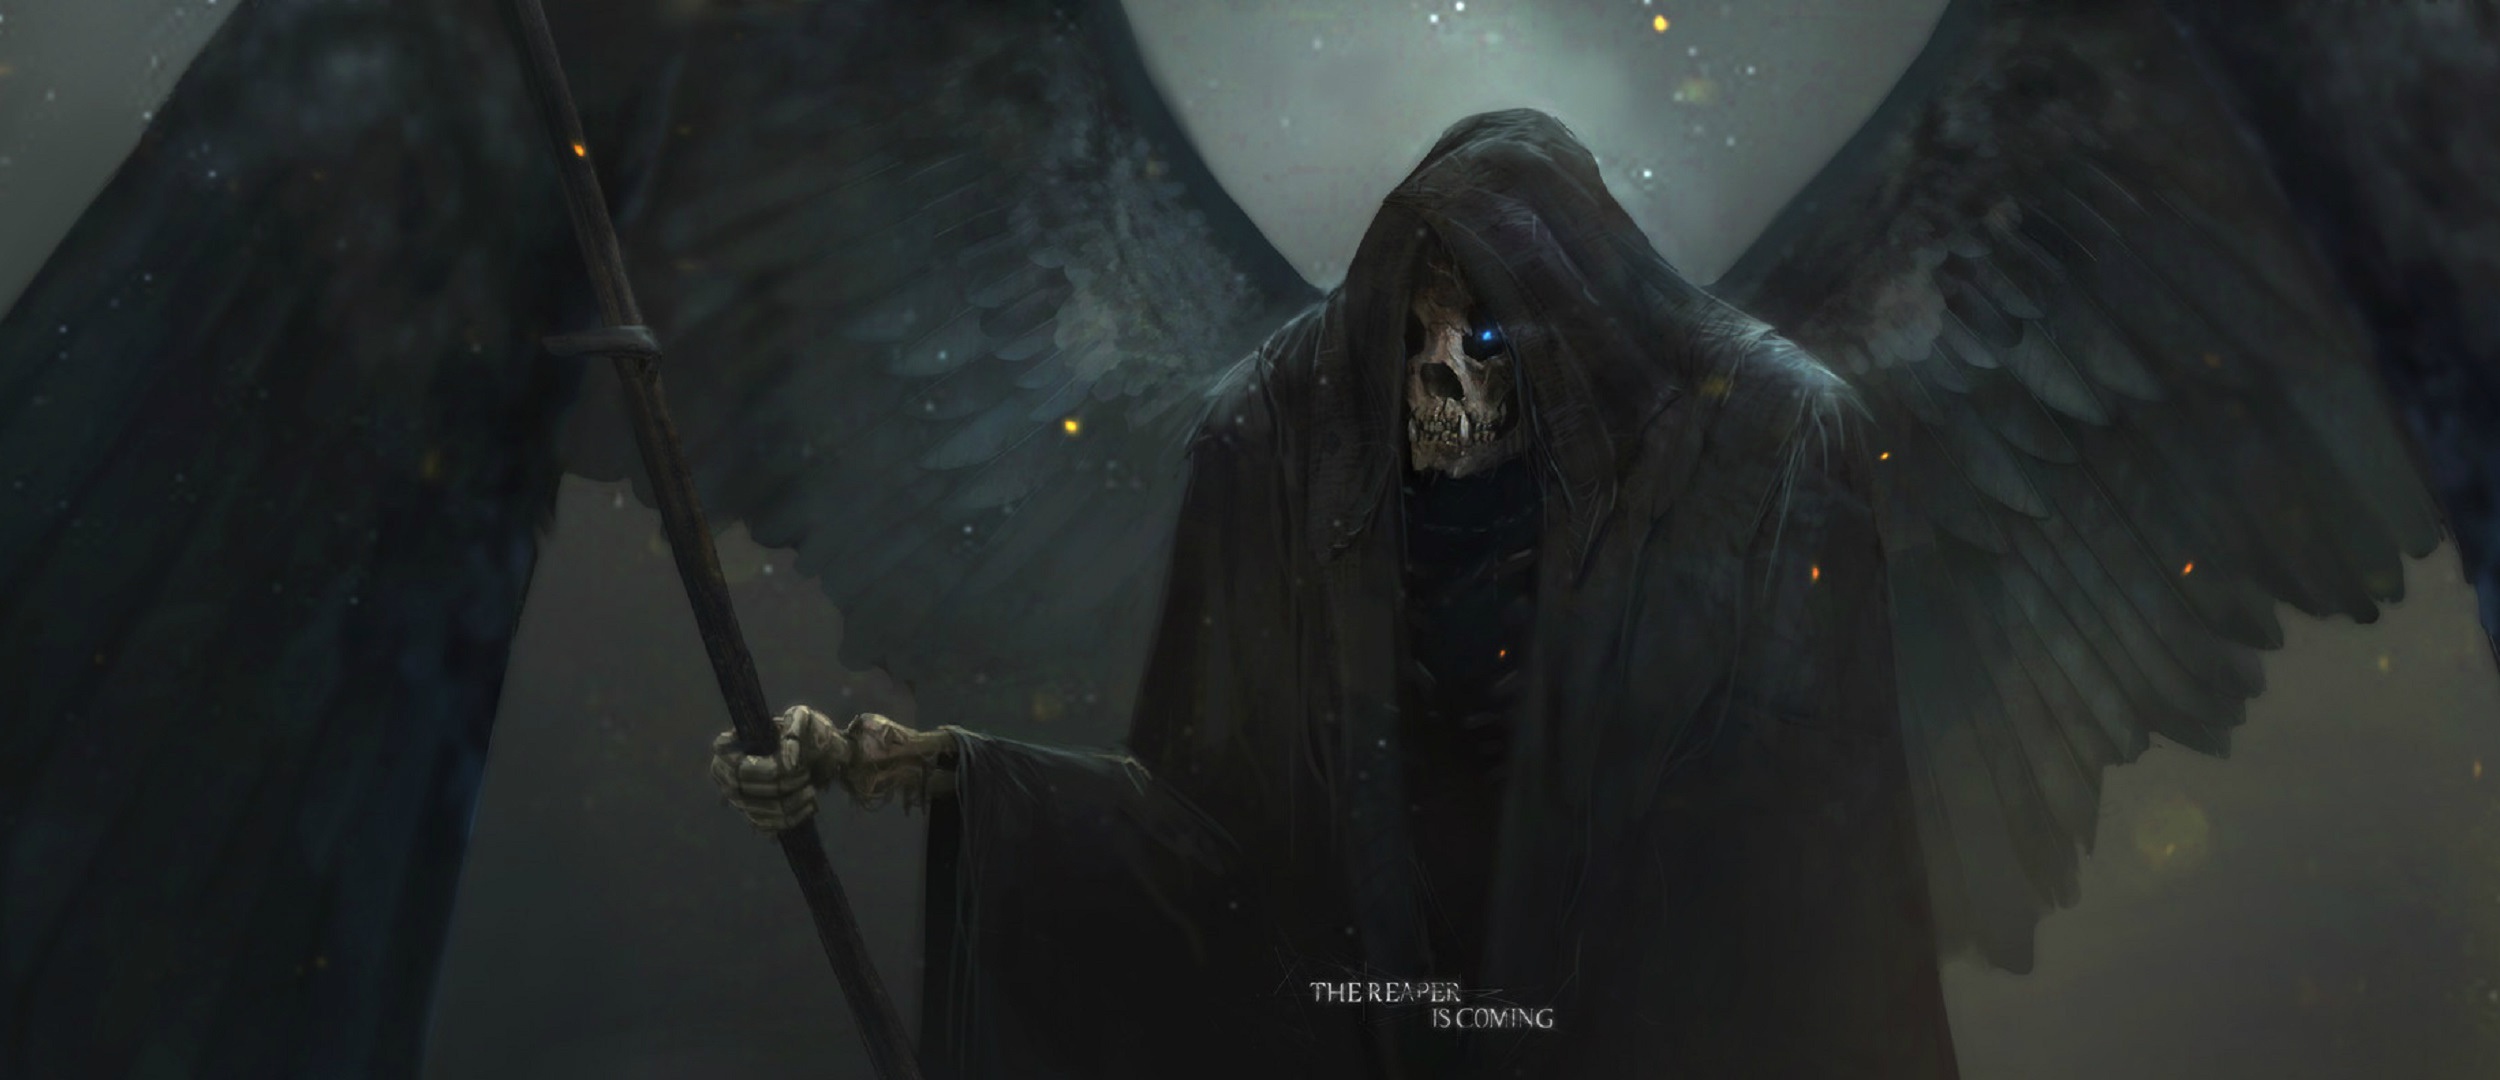 General 2500x1080 fantasy art skull Grim Reaper dark fantasy